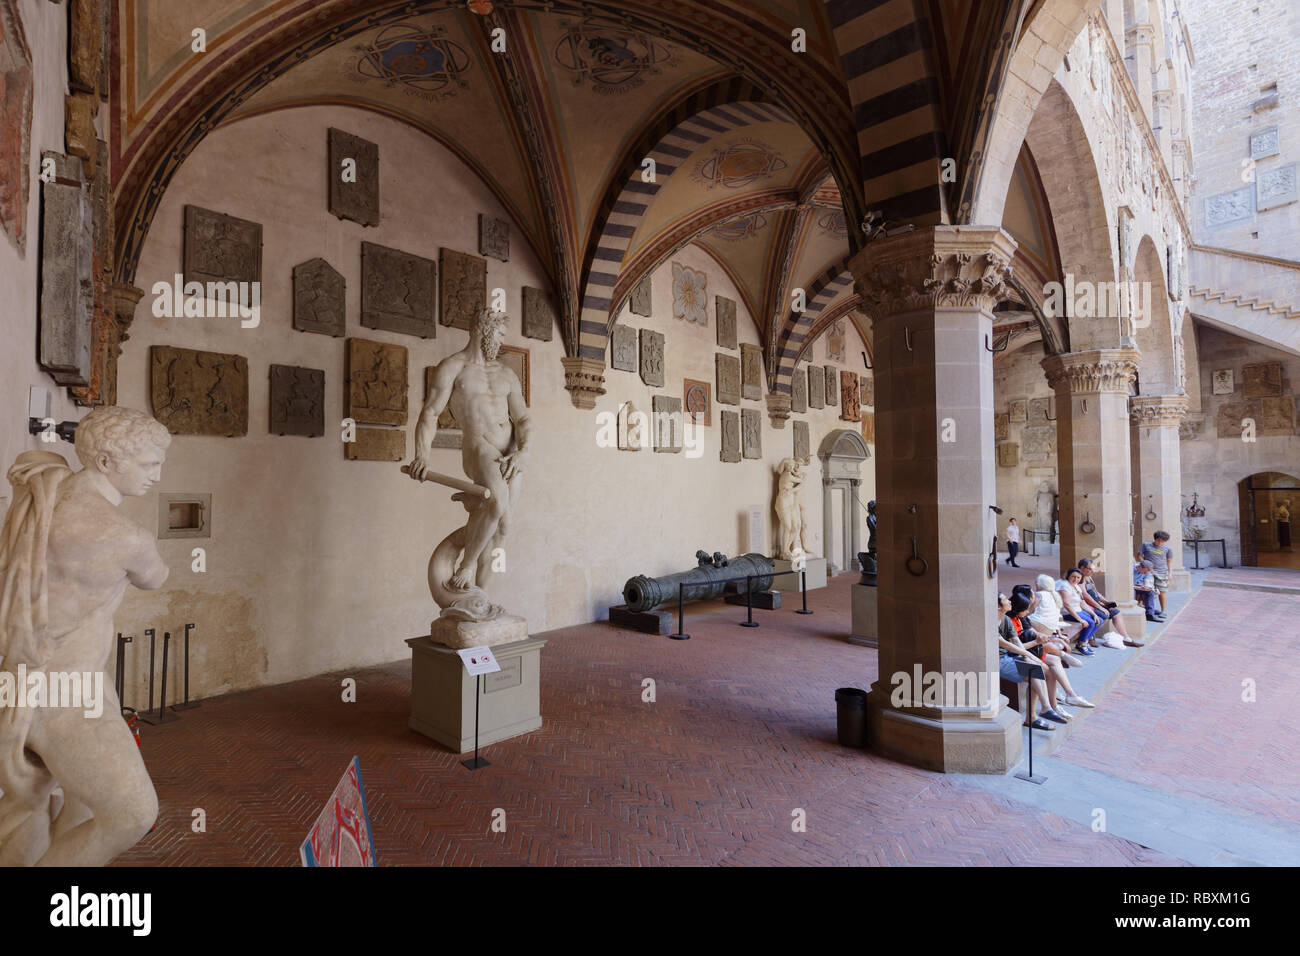 Firenze, Italia - 8 Agosto 2018: Persone in appoggio nel Palazzo del Bargello. Costruito nel XIII secolo, il più antico edificio pubblico a Firenze fu aperto come Foto Stock